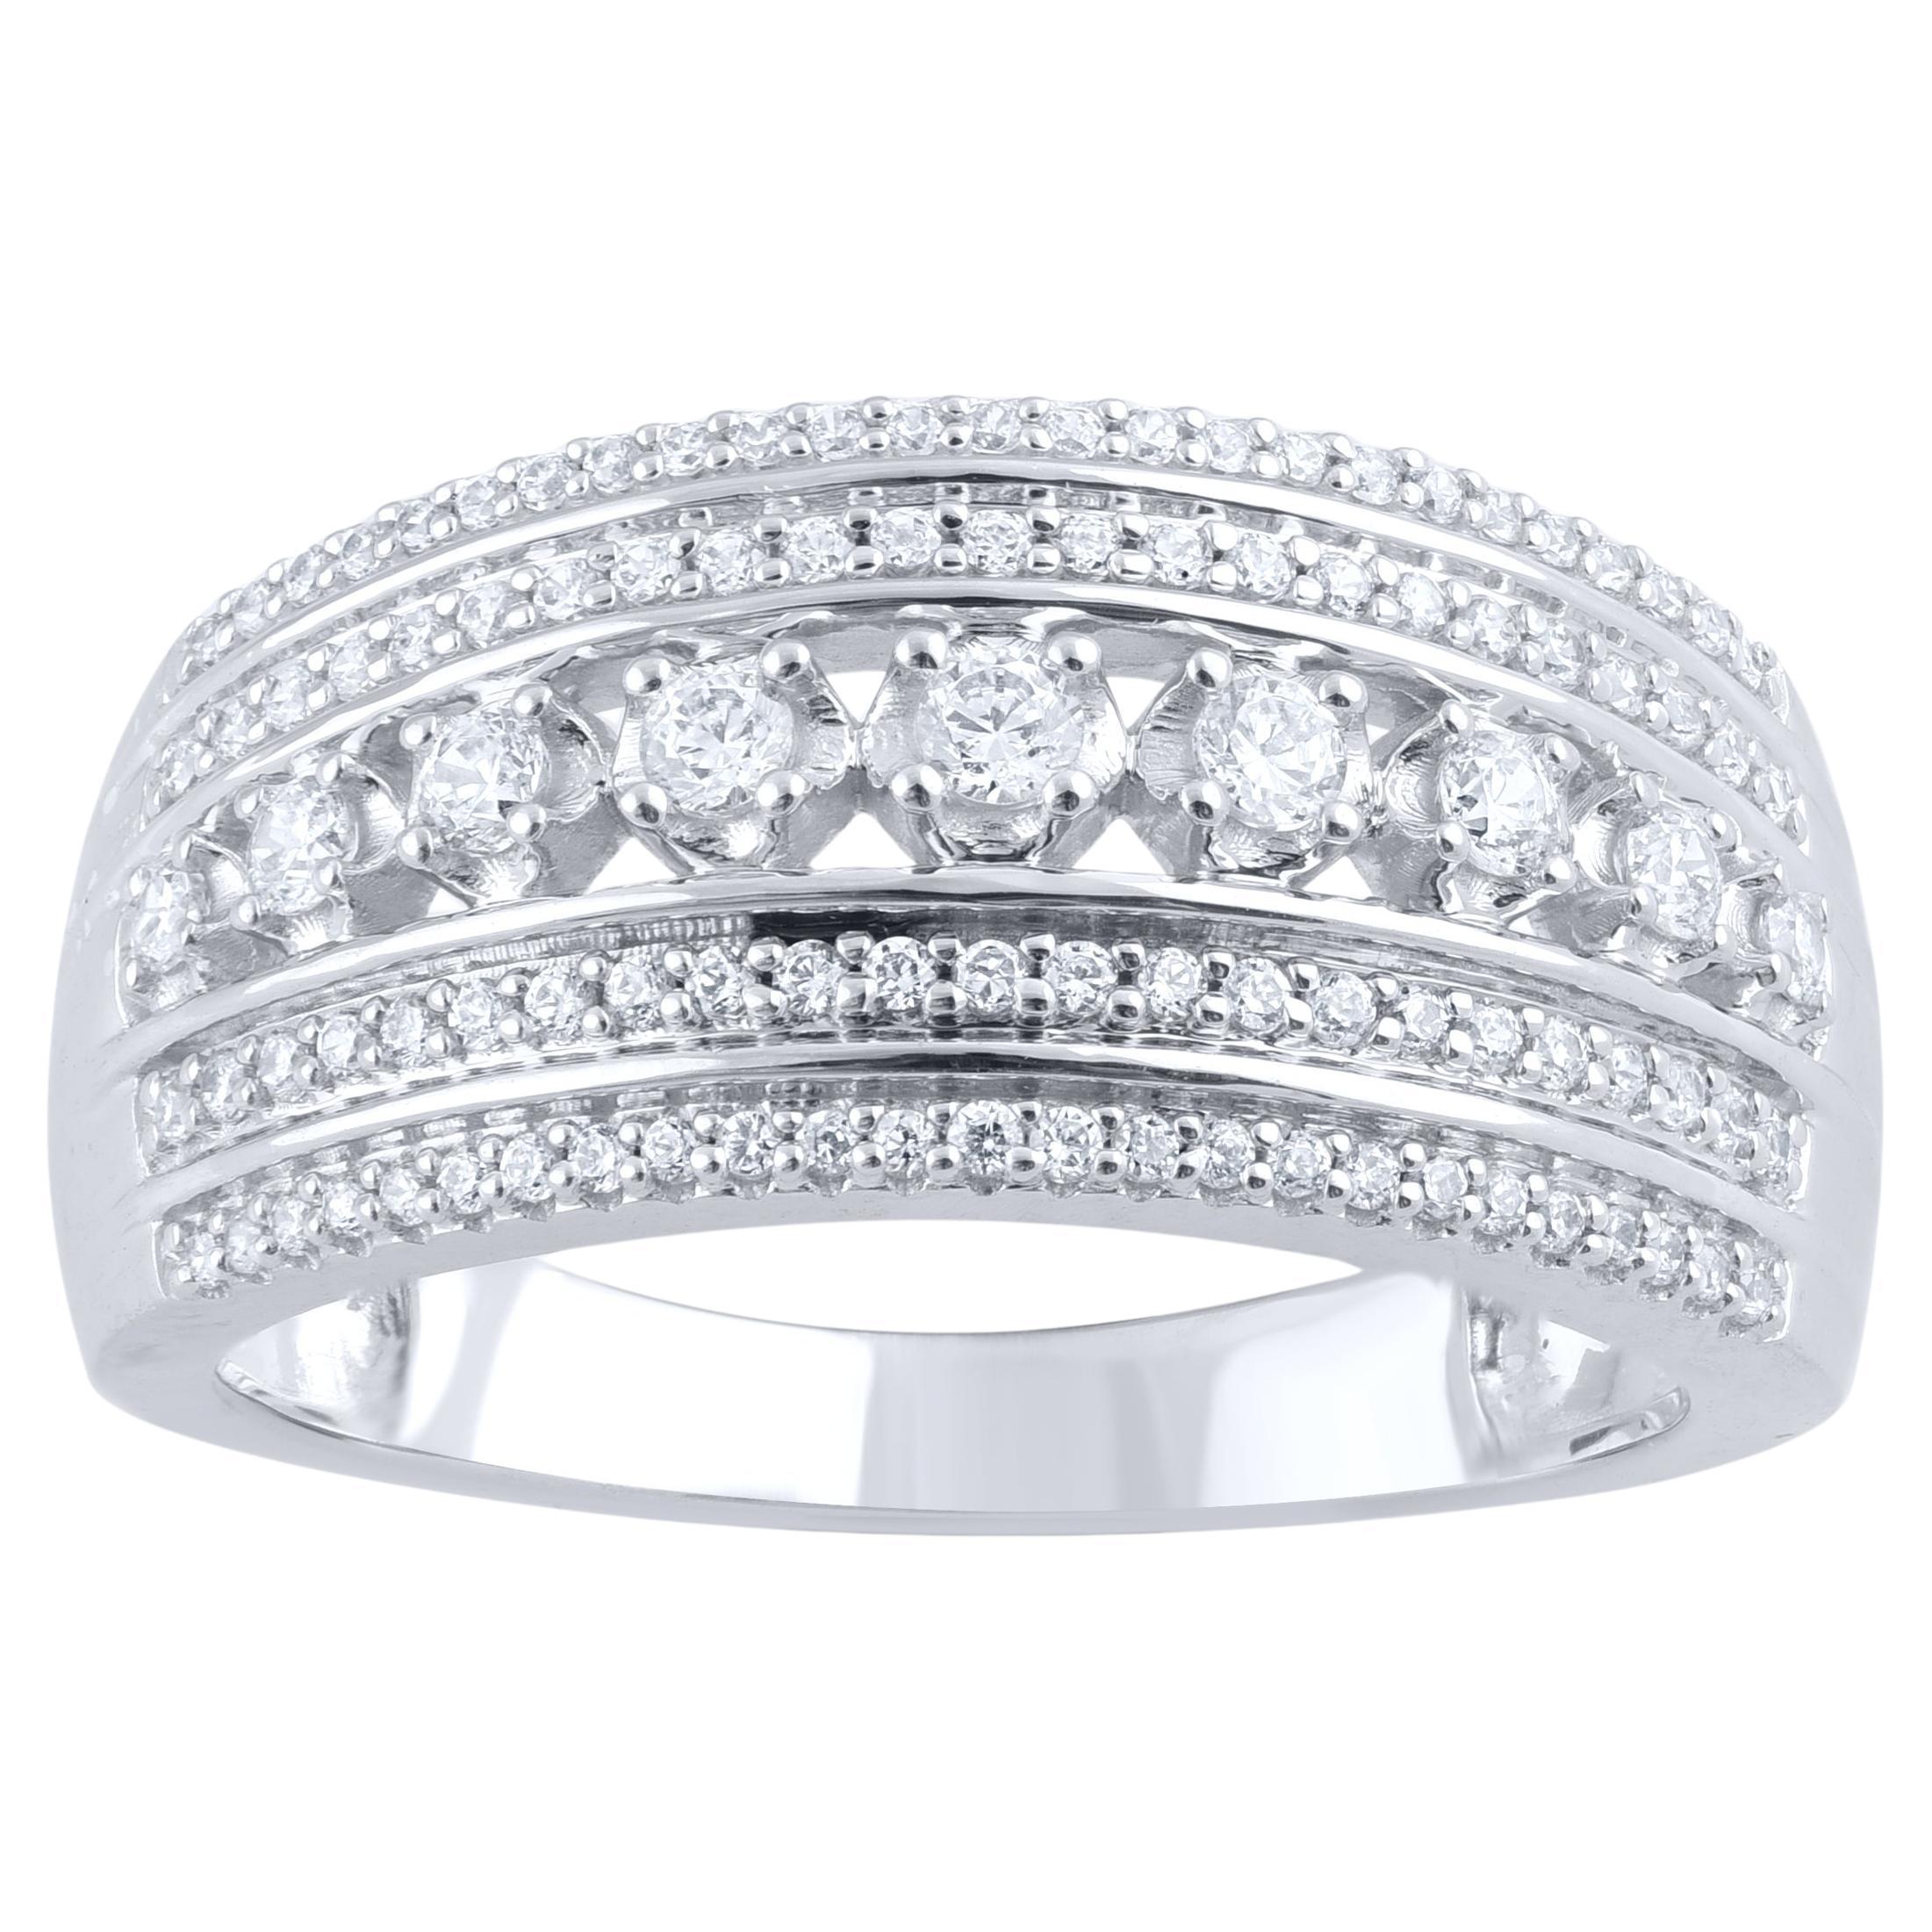 TJD 0.50 Carat Natural Diamond 14 Karat White Gold Multi Row Wedding Band Ring For Sale